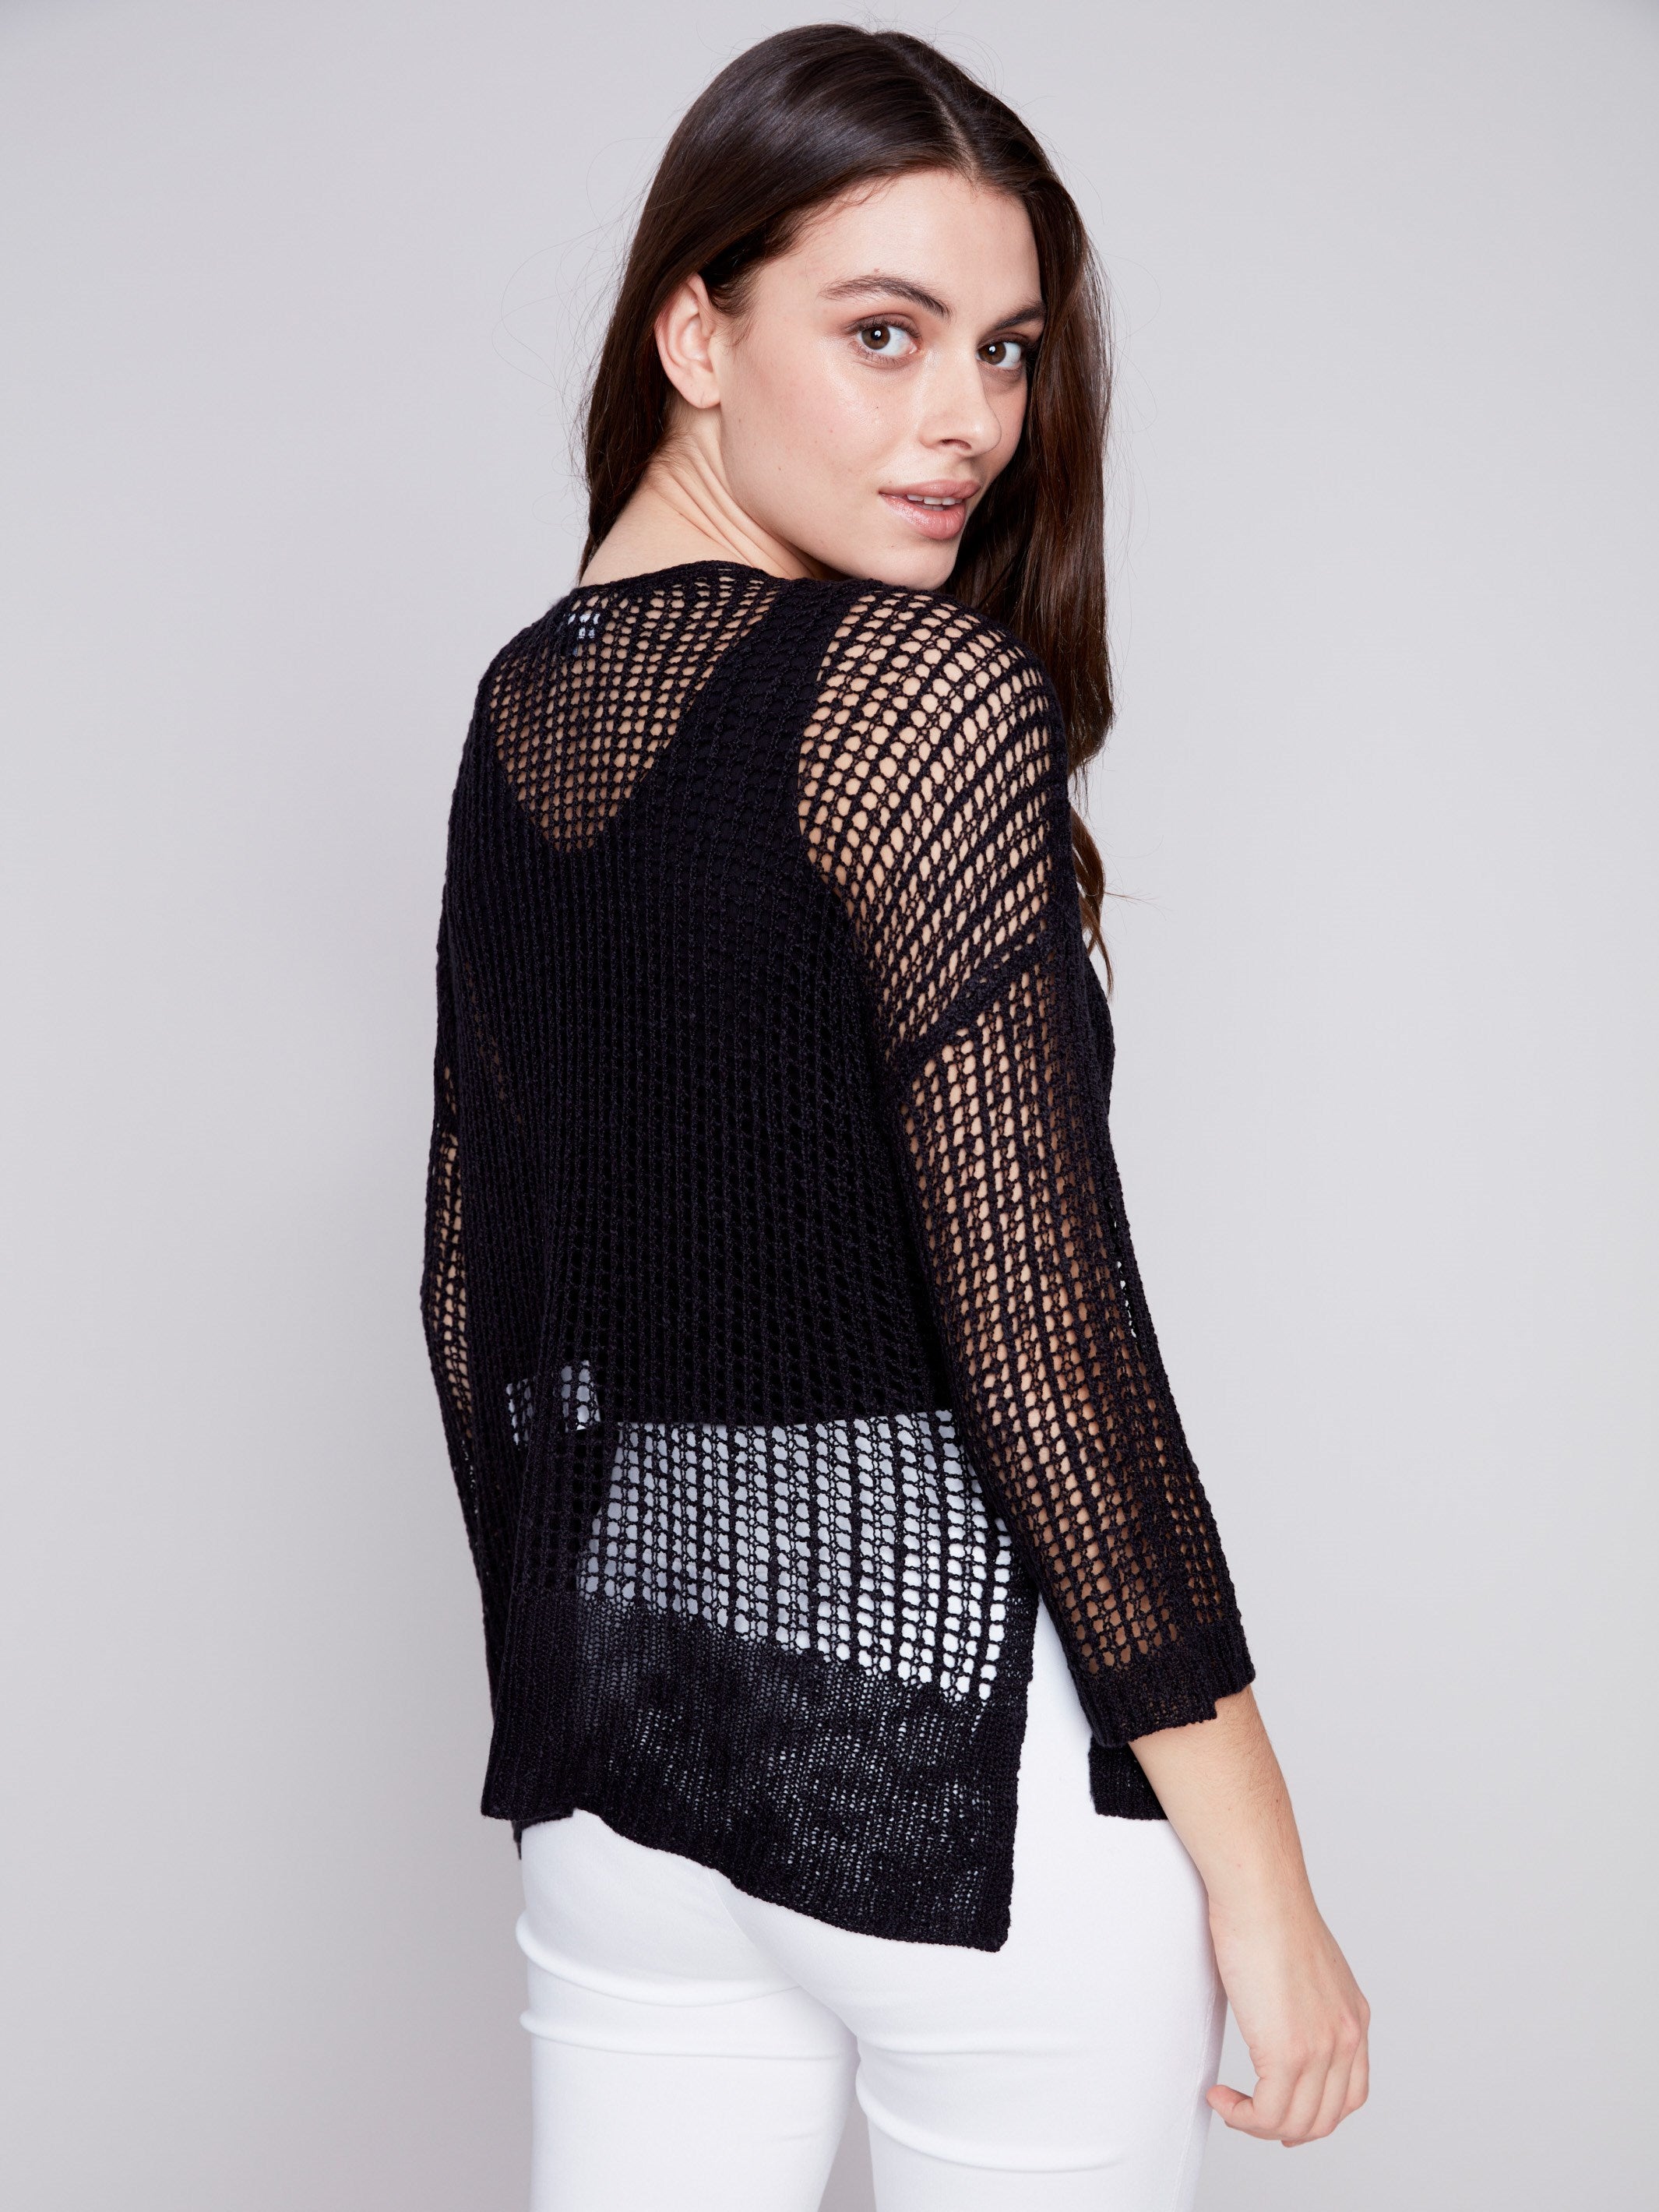 Charlie B Fishnet Crochet Sweater - Black - Image 2